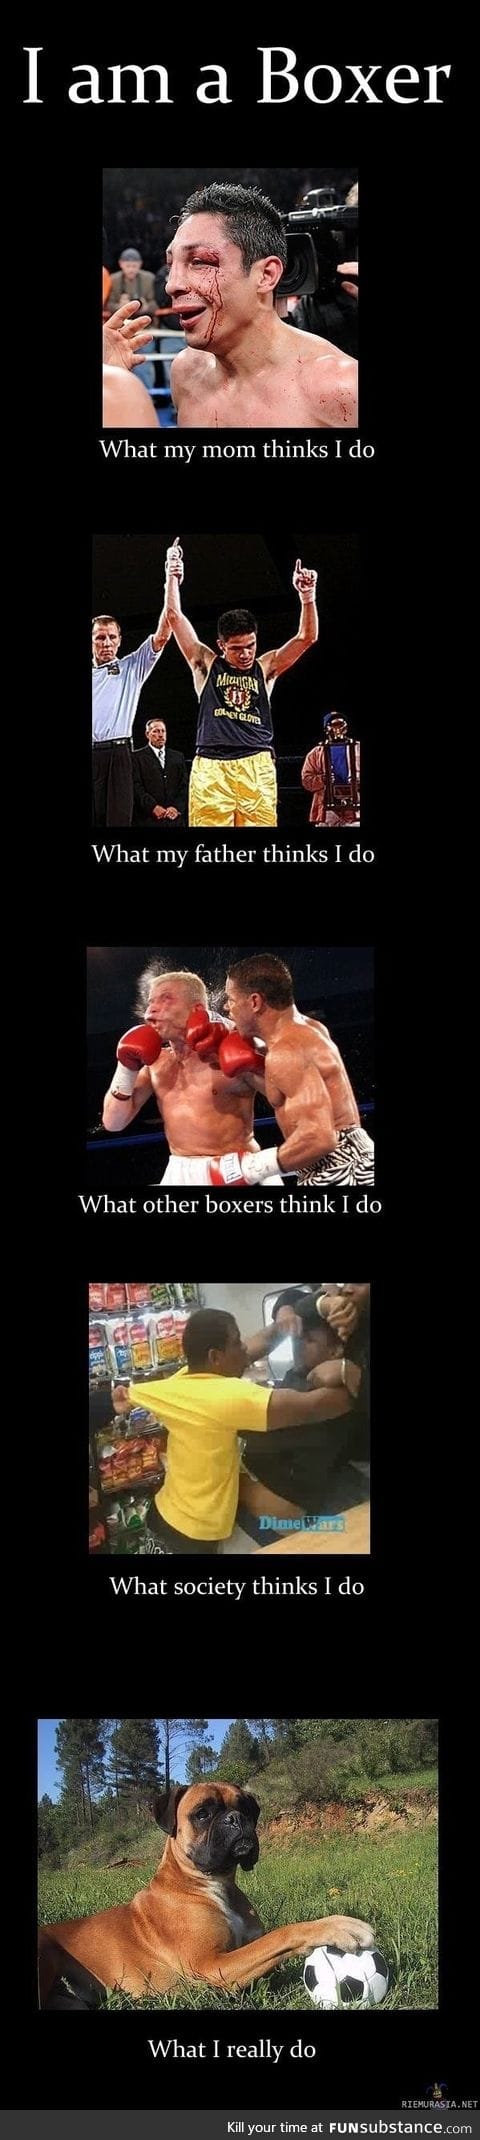 Boxers are misunderstood